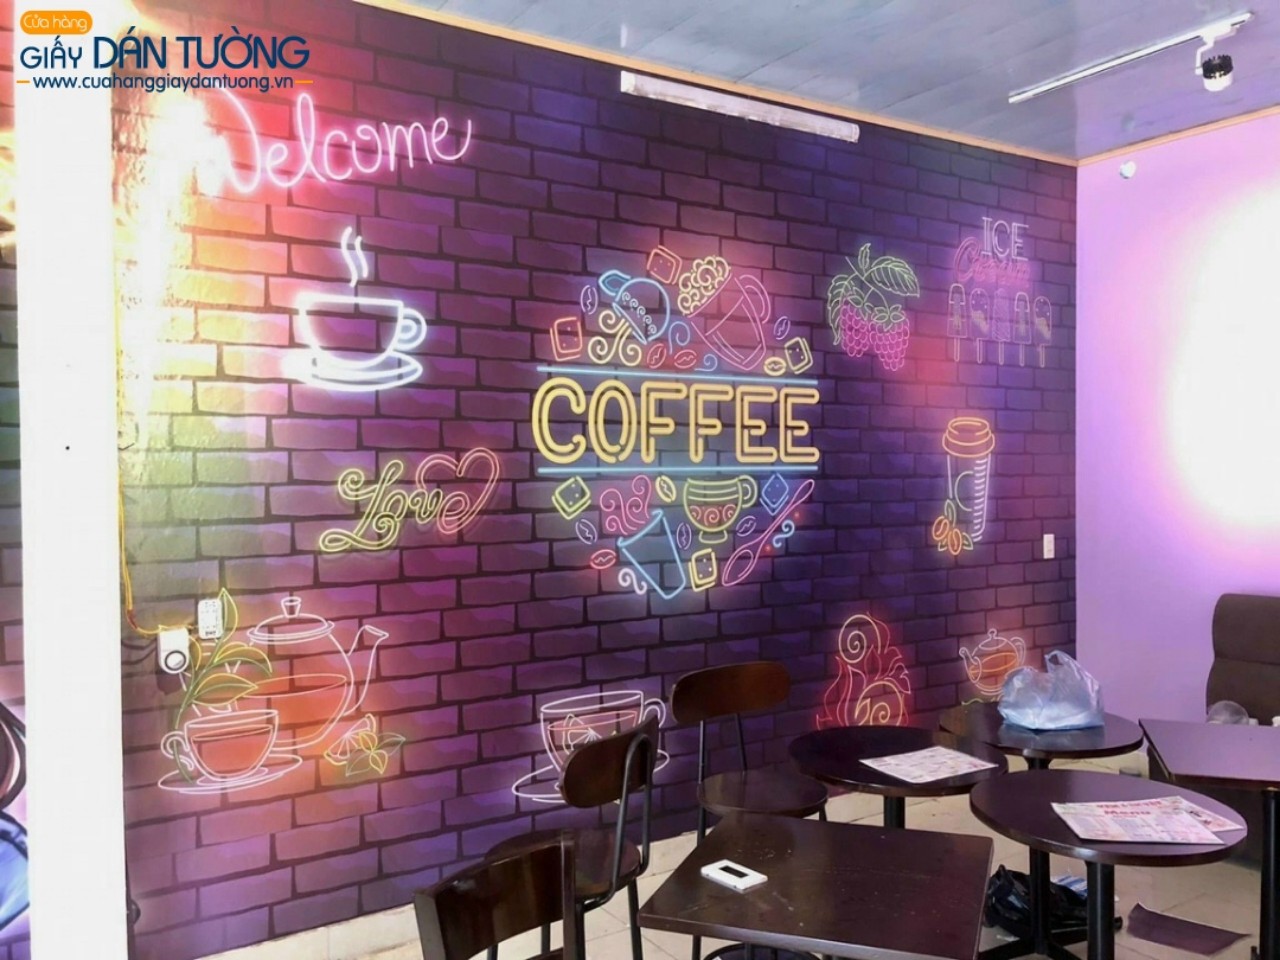 Mẫu tranh dán tường quán cà phê độc lạ tại quận 1